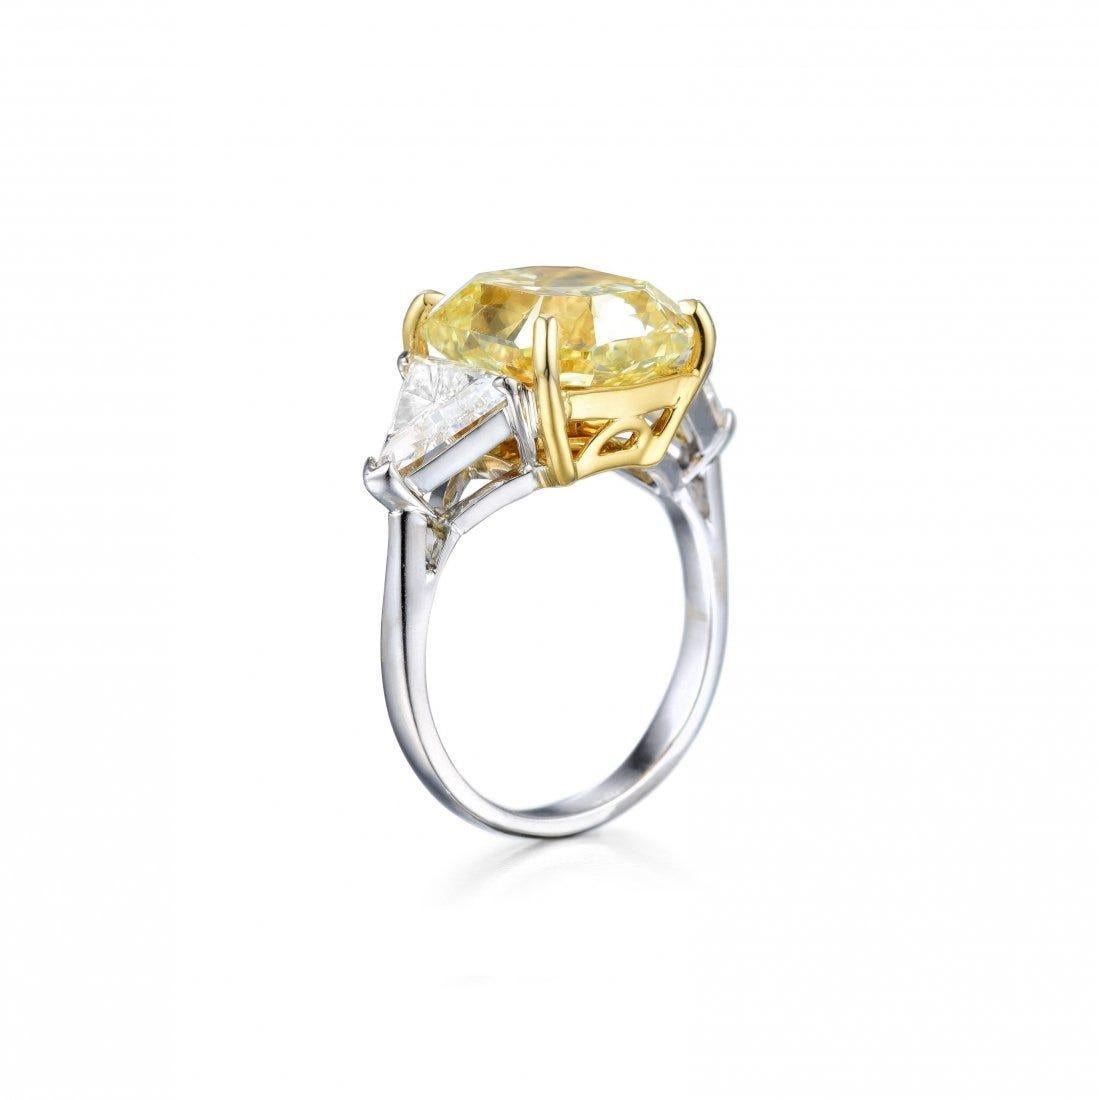 GIA-zertifizierter 4-karätiger Fancy Yellow Cushion Diamond Ring, verziert mit exquisiten Billionen von Diamanten, die in einer Kombination aus Platin und 18 Karat Gelbgold gefasst sind. Dieser Ring ist ein Zeugnis für unvergleichliche